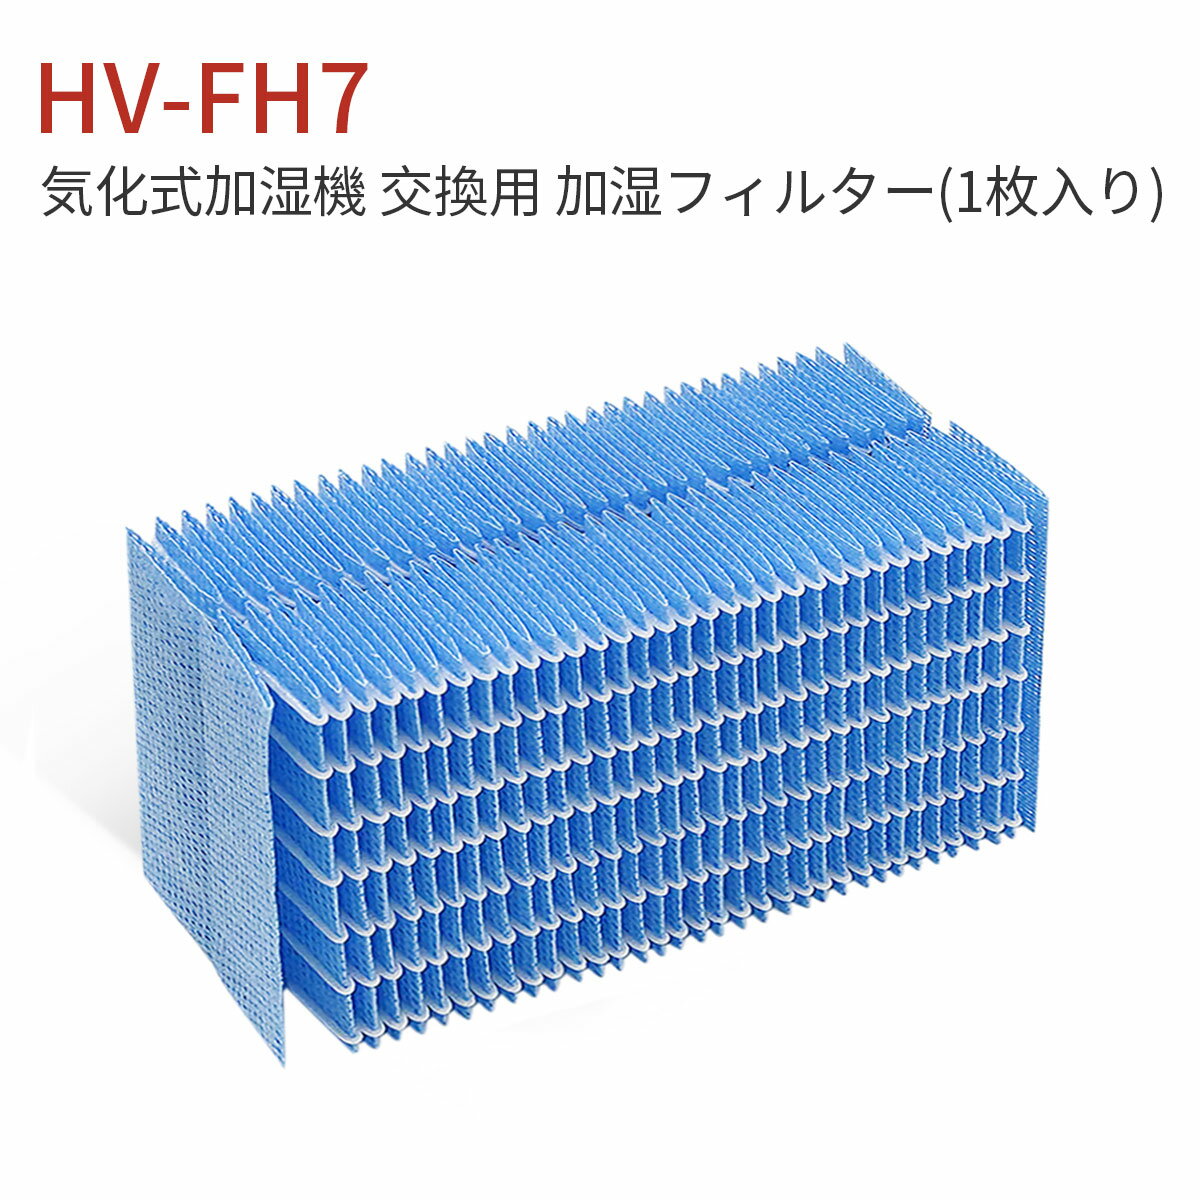 HV-FH7 加湿器 フィルター シャープ 加湿フィルター hv-fh7 気化式加湿機 HV-H55 HV-H75 HV-J55 HV-J75 HV-L75 HV-L55 HV-H55E6 交換用フィルター (互換品/1枚入り)